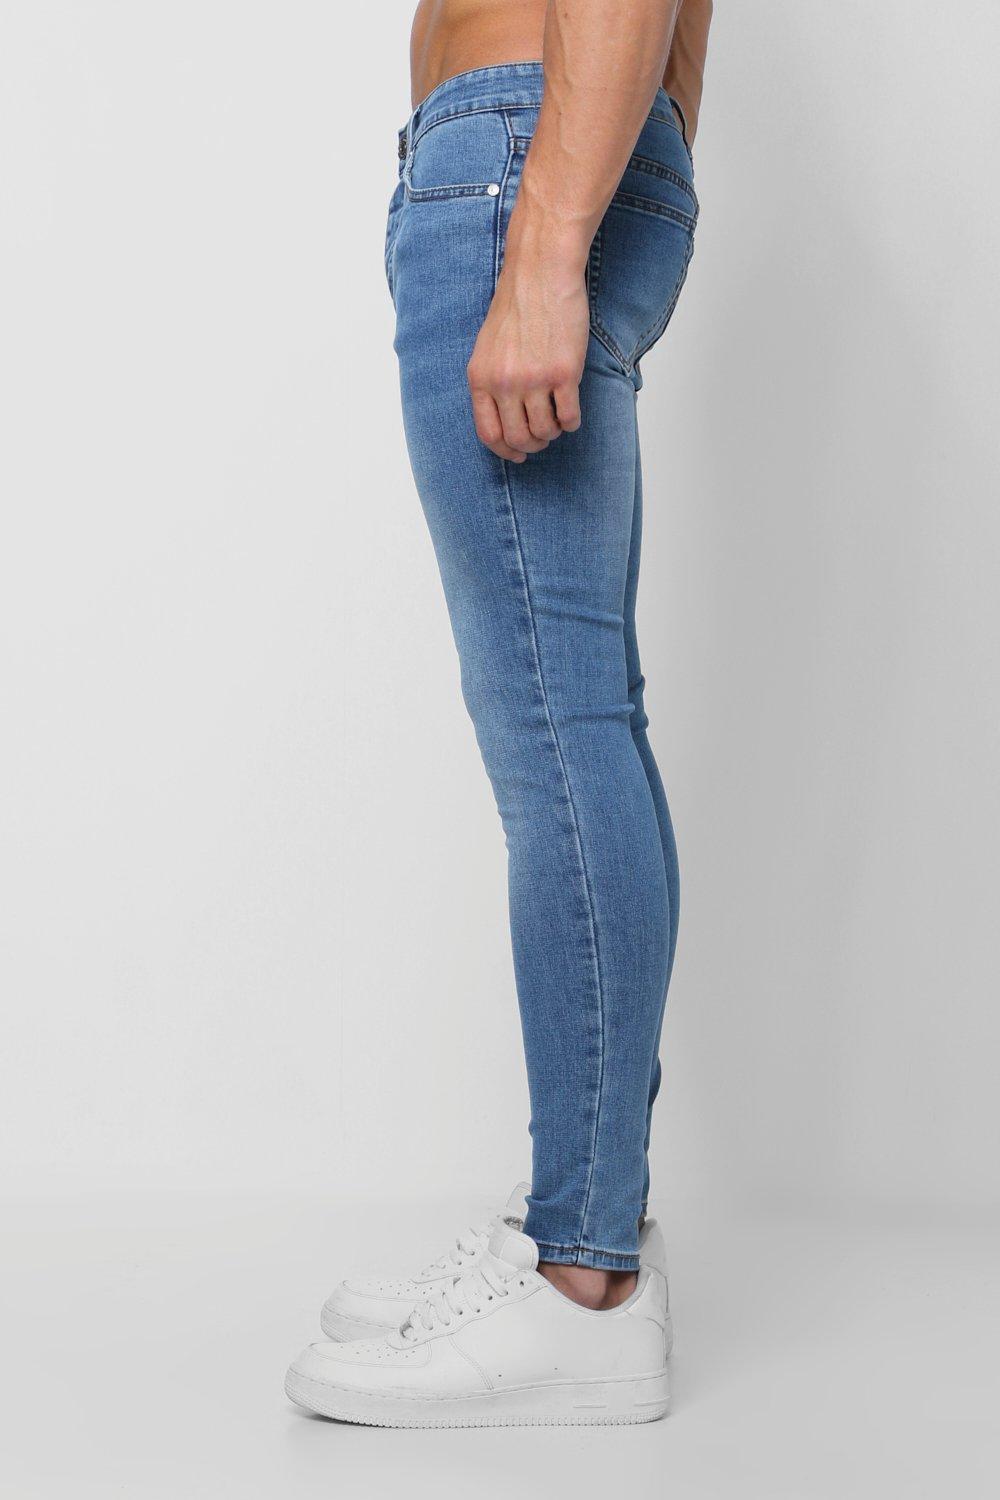 vintage skinny jeans